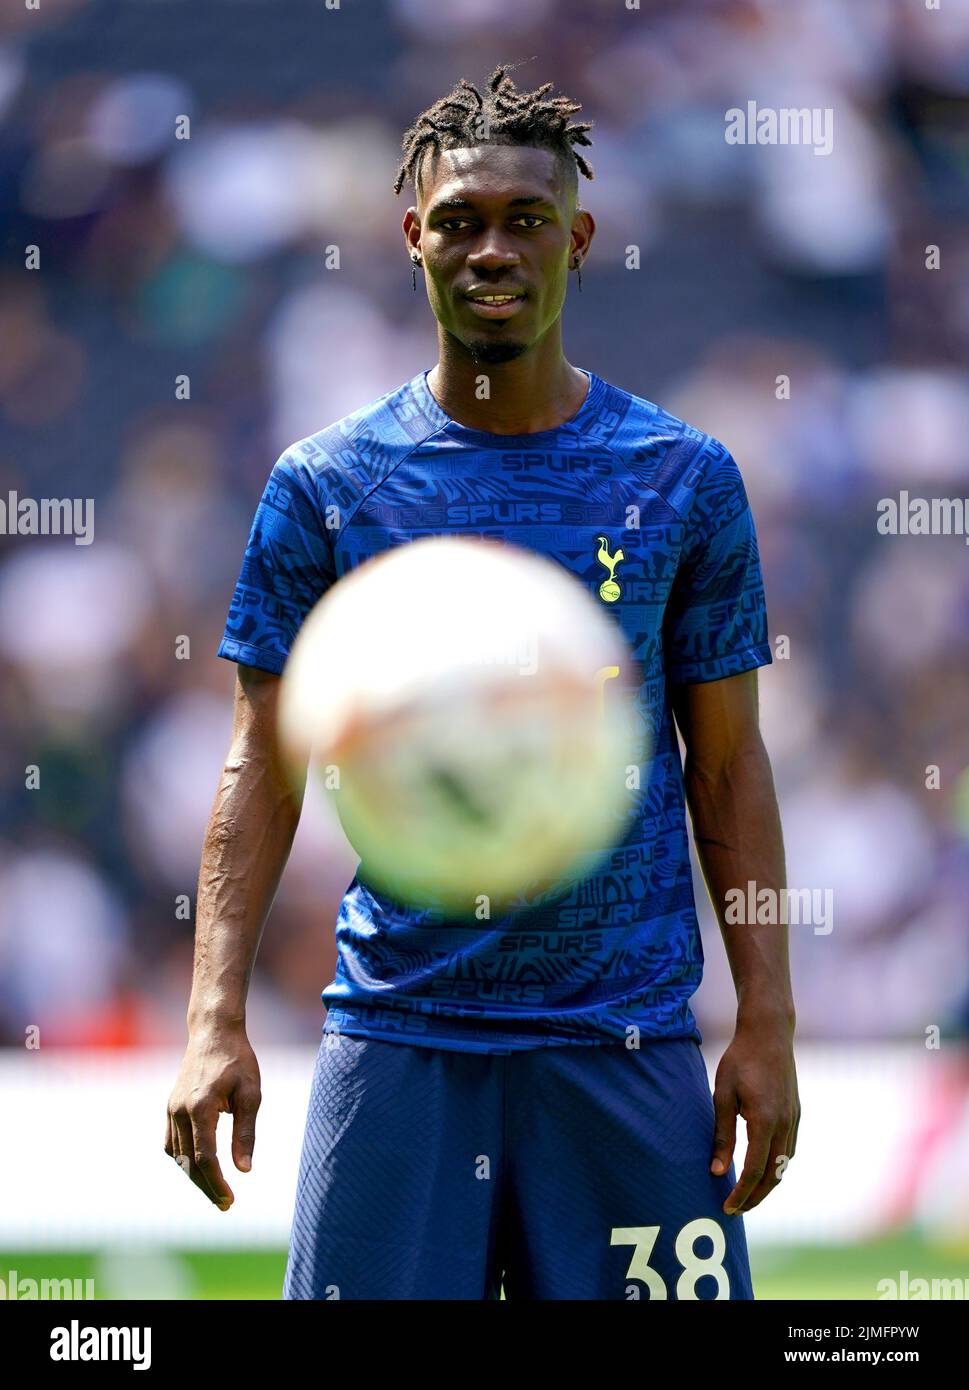 Yves Bissouma del Tottenham Hotspur se calienta en el campo antes del partido de la Premier League en el Tottenham Hotspur Stadium, Londres. Fecha de la foto: Sábado 6 de agosto de 2022. Foto de stock